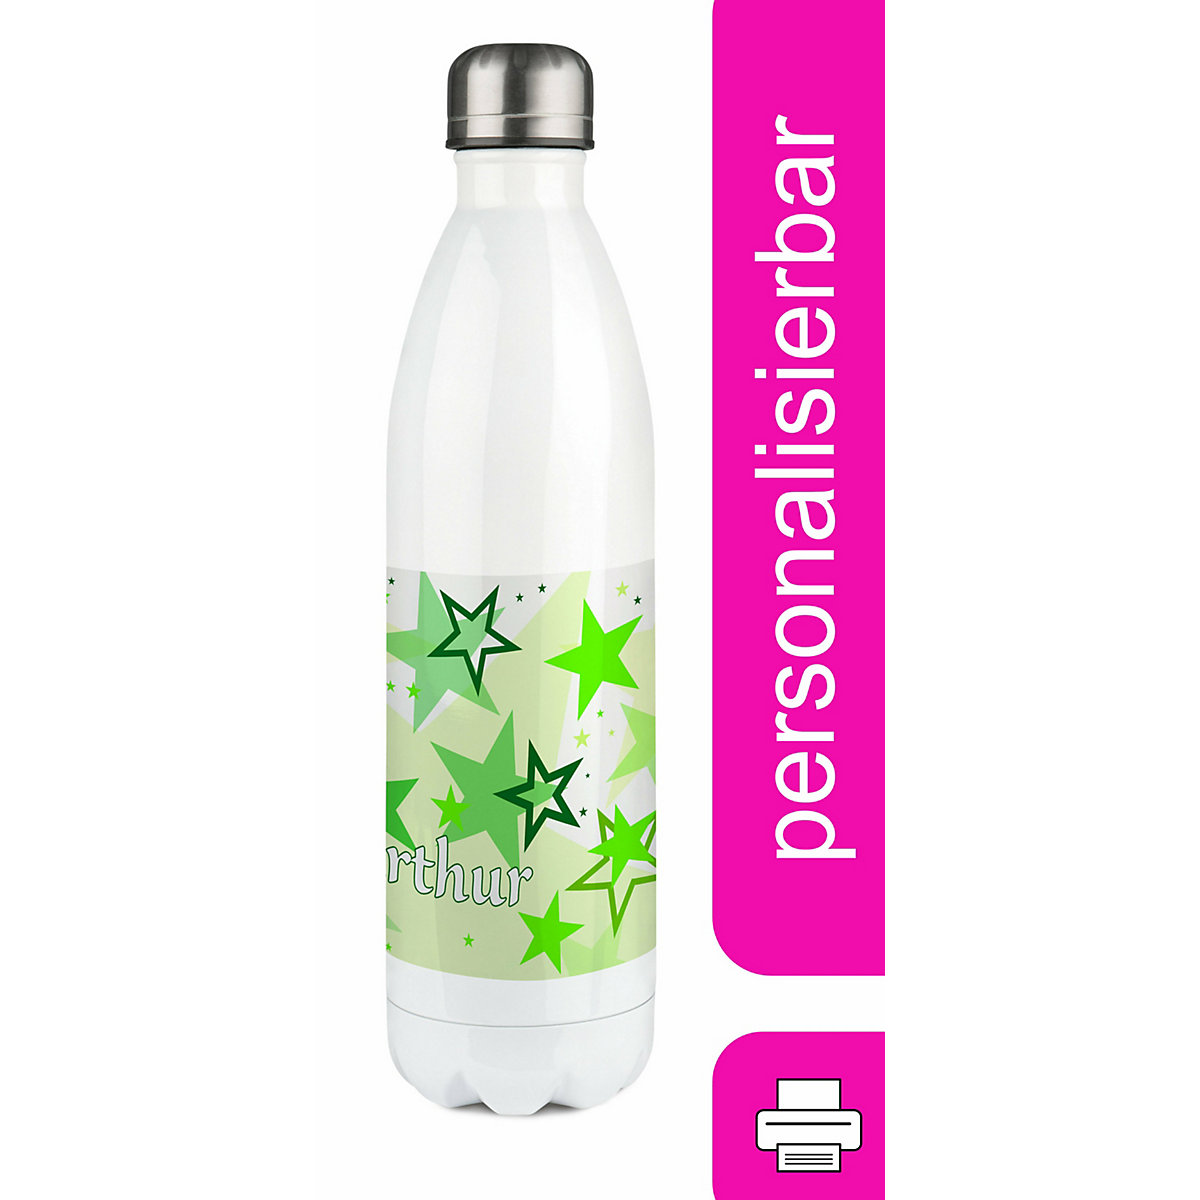 CreaDesign Edelstahl Kinder Thermoflasche / Trinkflasche bunt Sternenhimmel Farbe grün Spülmaschinenfest Auslaufsicher Bruchfest Doppelwandig Für Heißgetränke geeignet Mit Deckel Isoliert